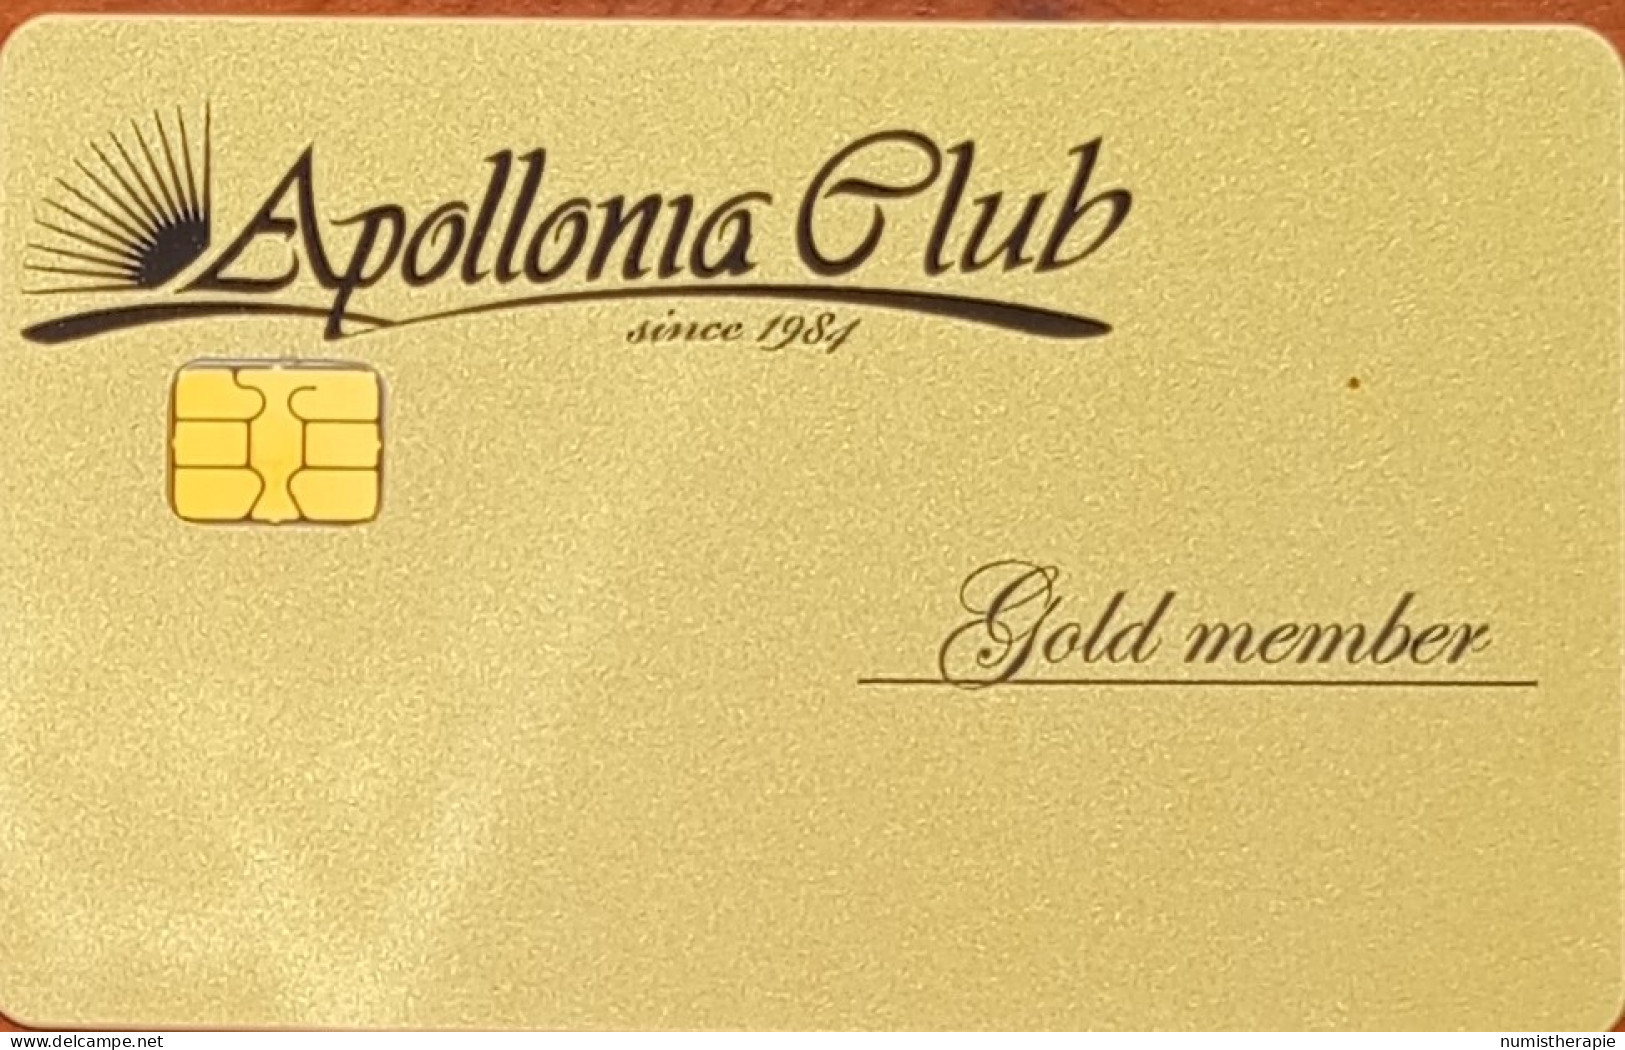 Apollonia Club Gold Member : Gevgelija Georgie - Casino Cards